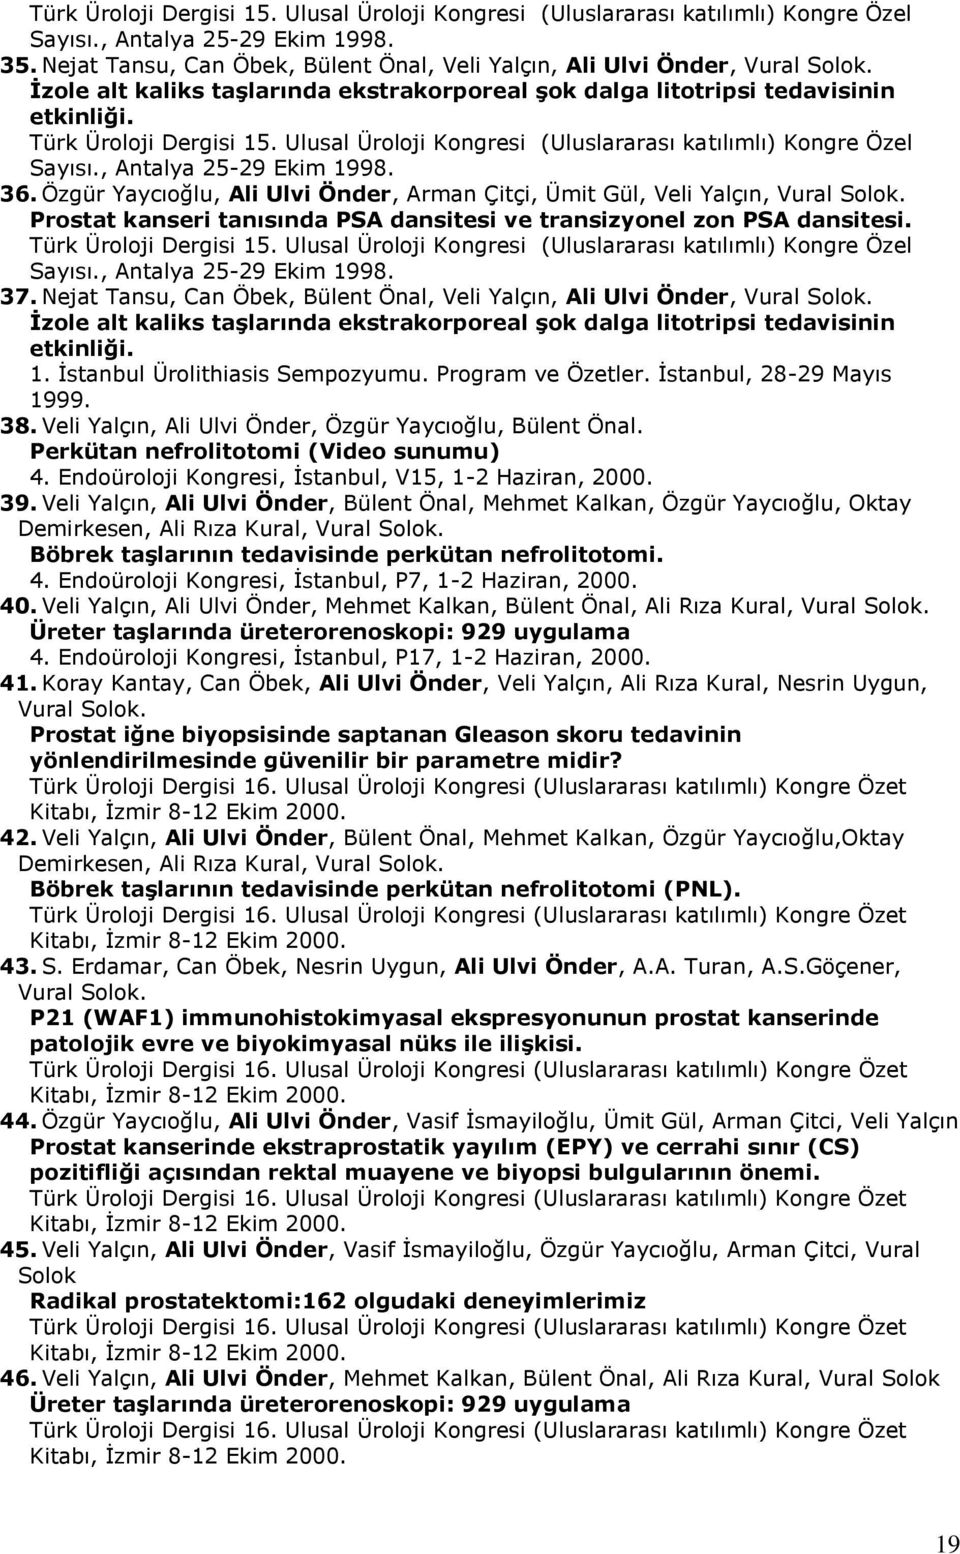 Ulusal Üroloji Kongresi (Uluslararası katılımlı) Kongre Özel Sayısı., Antalya 25-29 Ekim 1998. 36. Özgür Yaycıoğlu, Ali Ulvi Önder, Arman Çitçi, Ümit Gül, Veli Yalçın, Vural Solok.